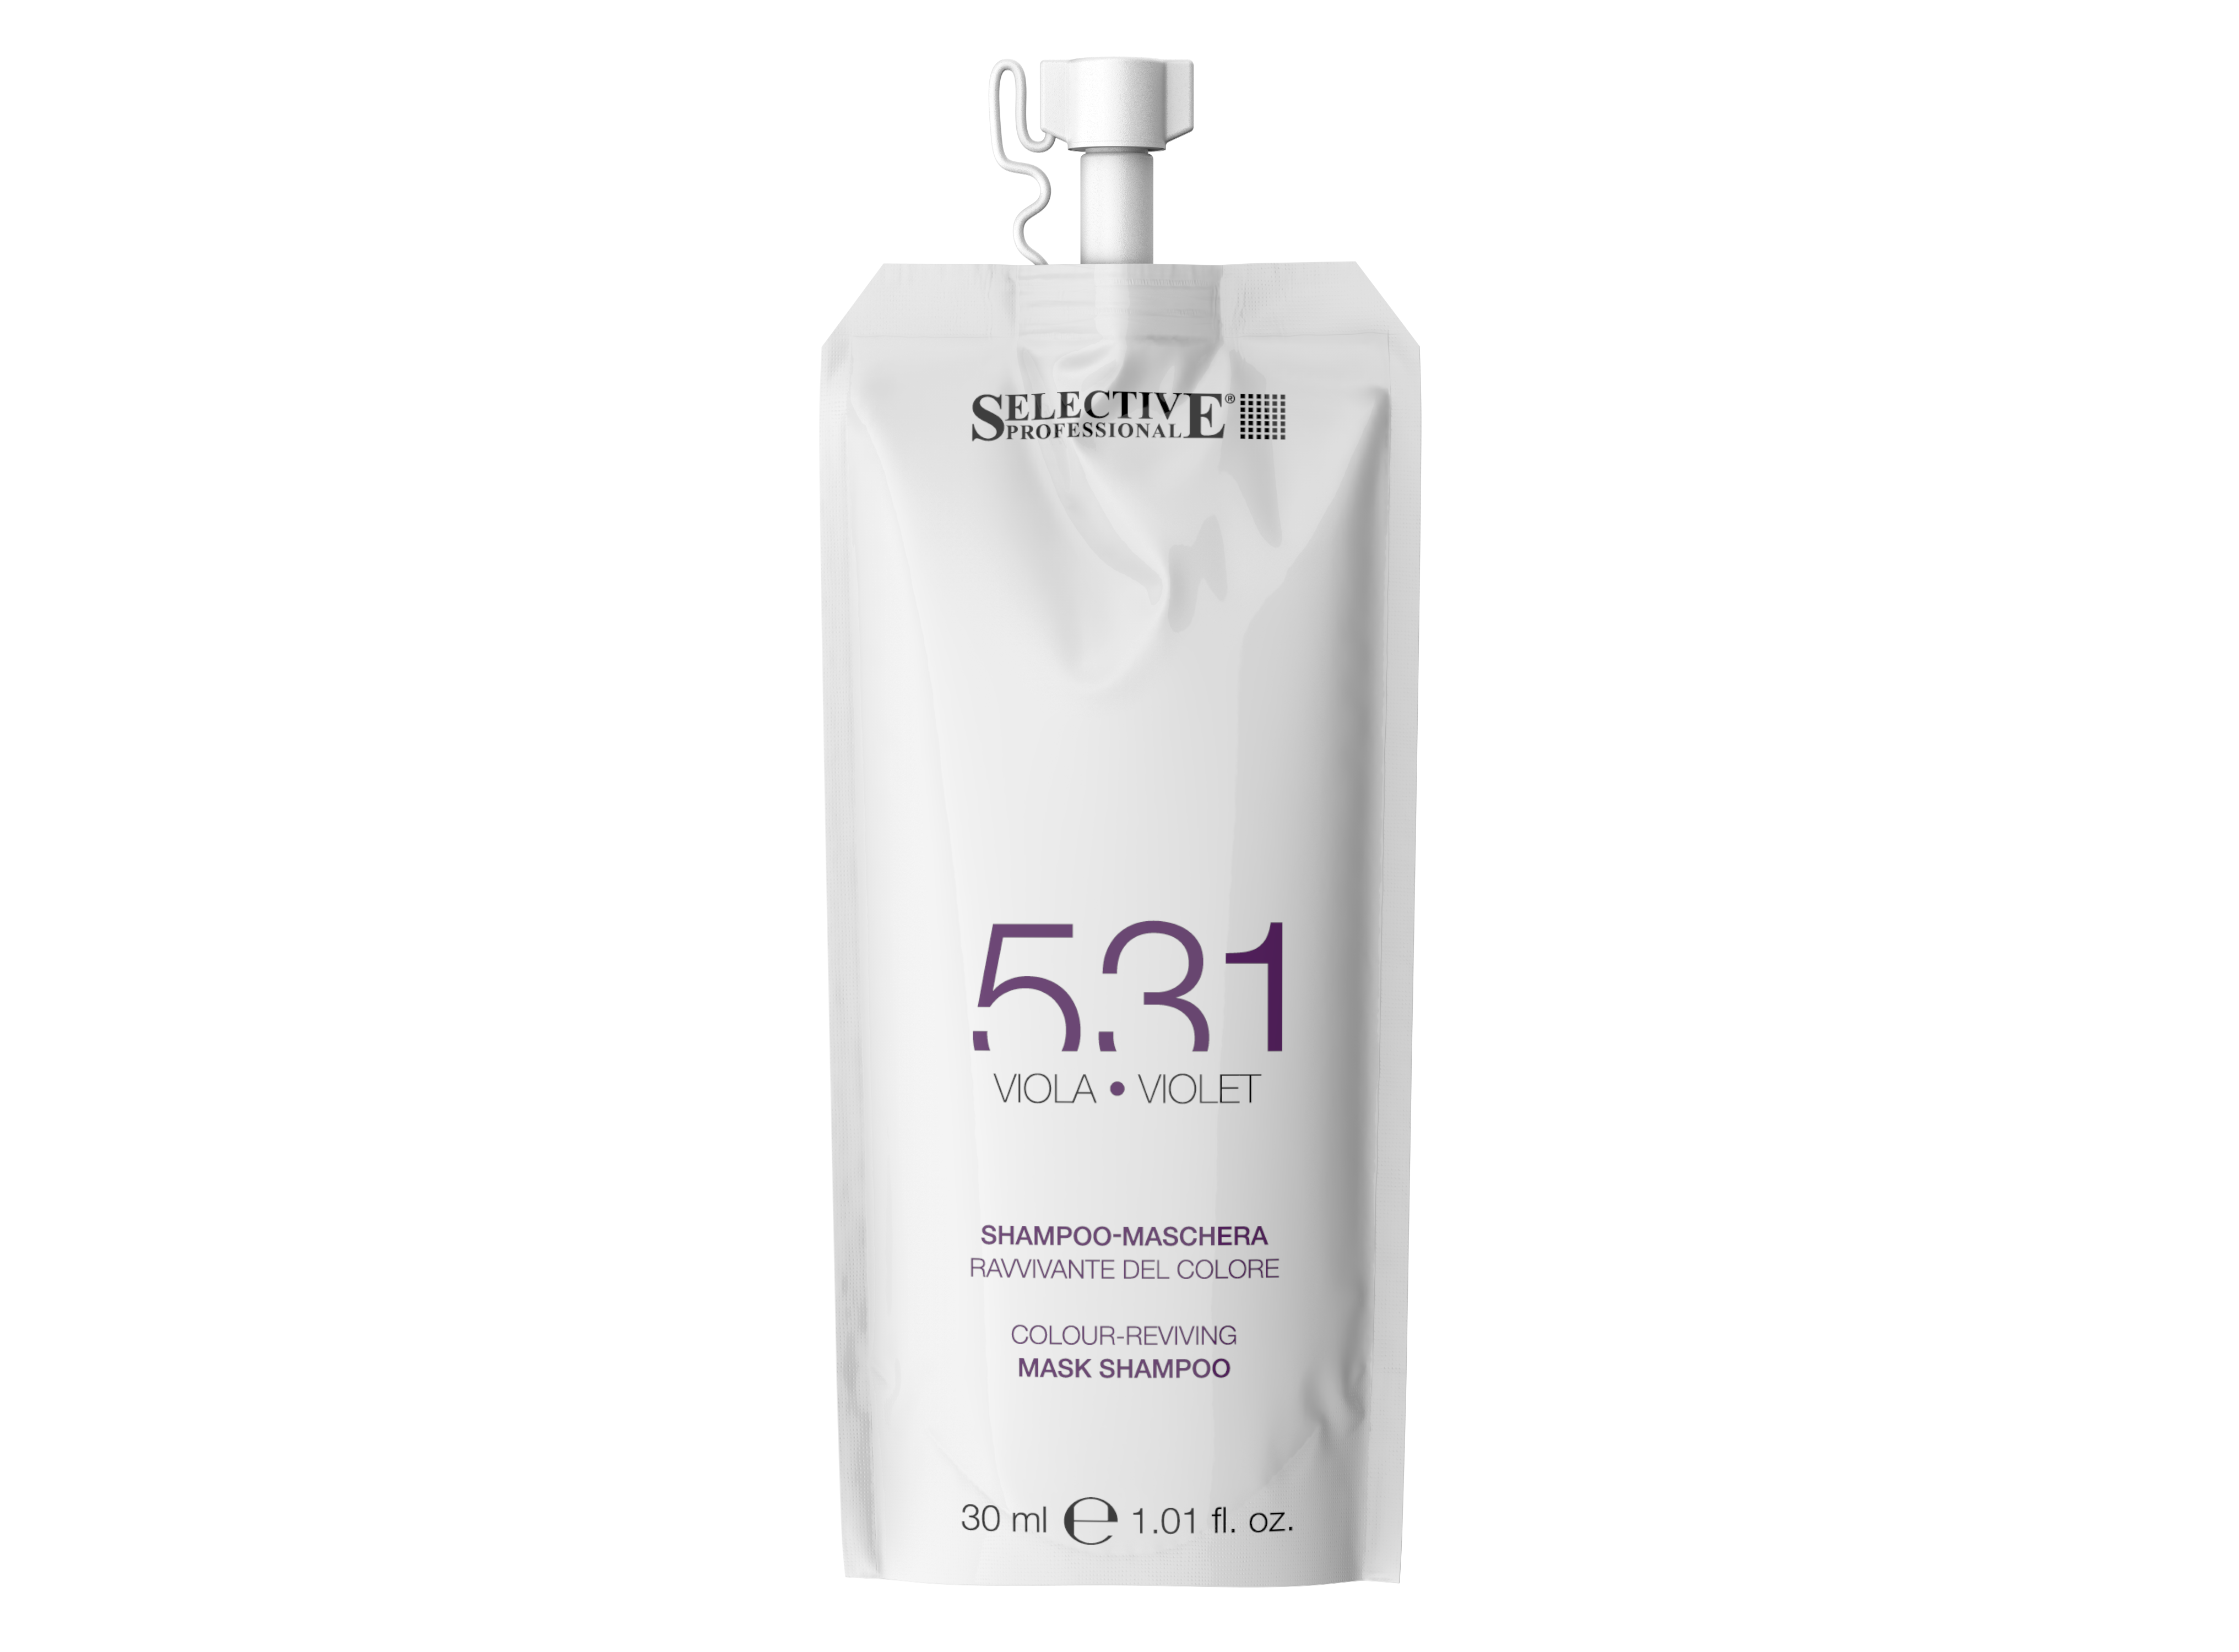 Шампуни для волос:  SELECTIVE PROFESSIONAL -  Оттеночный шампунь - маска 531 для возобновления цвета волос, Фиолетовый (30 мл)